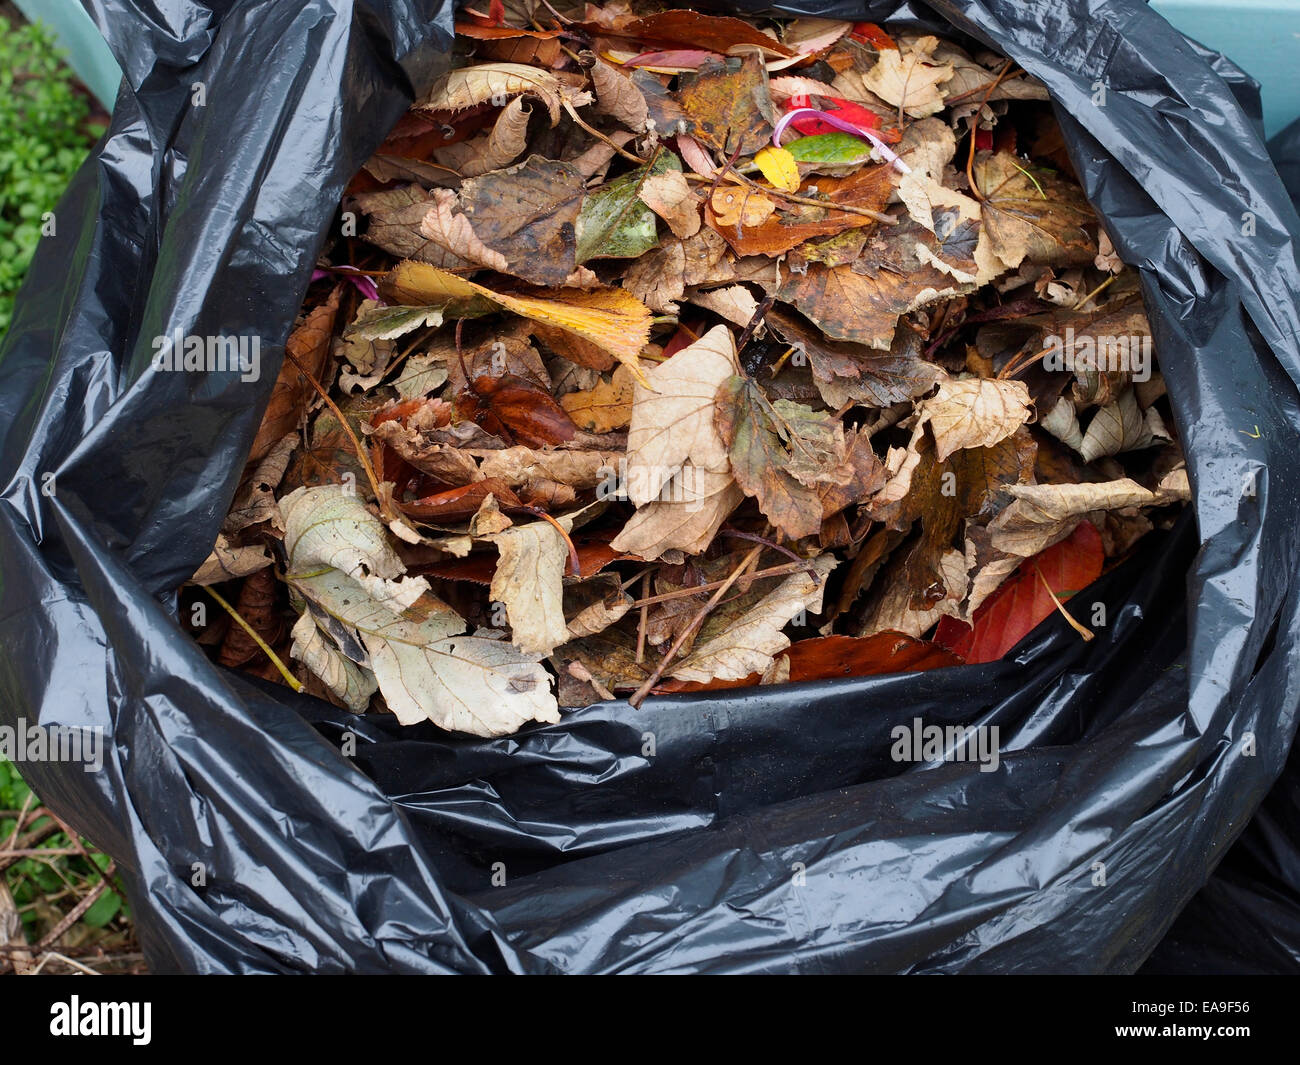 Una bolsa de plástico llena de negros muertos hojas de otoño, que se descomponen en la bolsa formando un molde de hojas útiles abonos de jardín Foto de stock